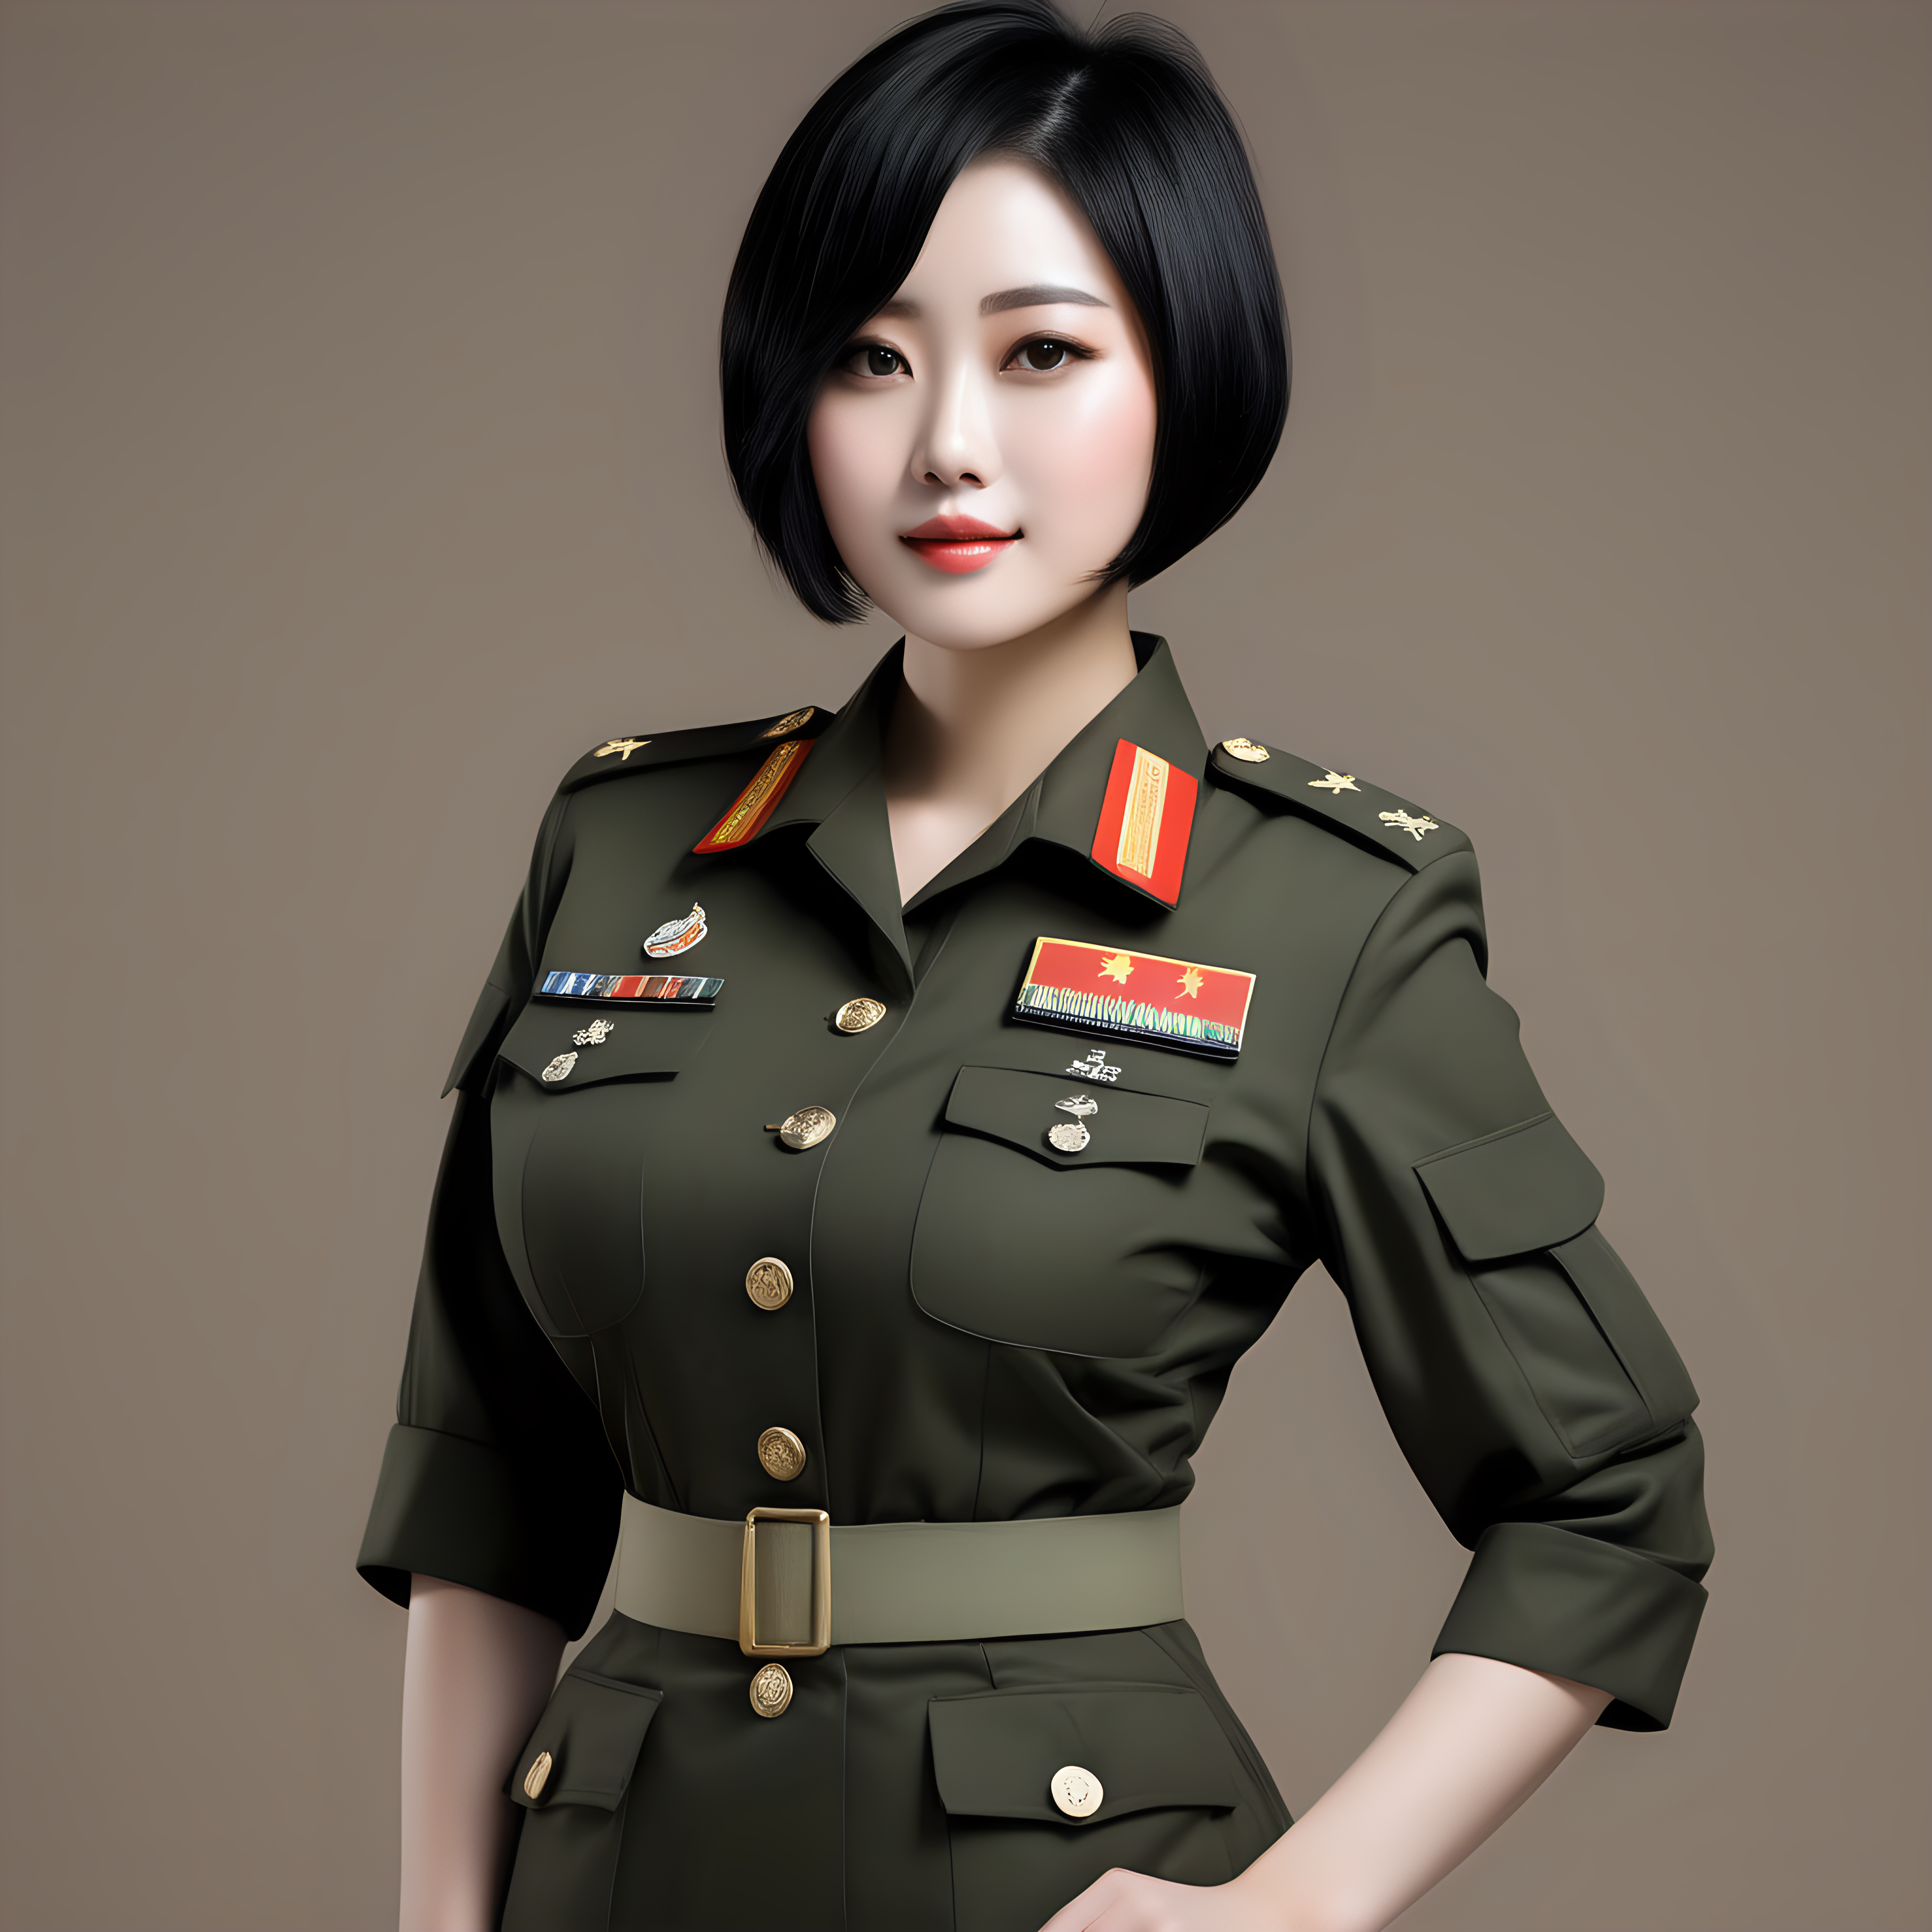 一名中国陆军
青年女性
短发
黑发
大乳房
迷彩服